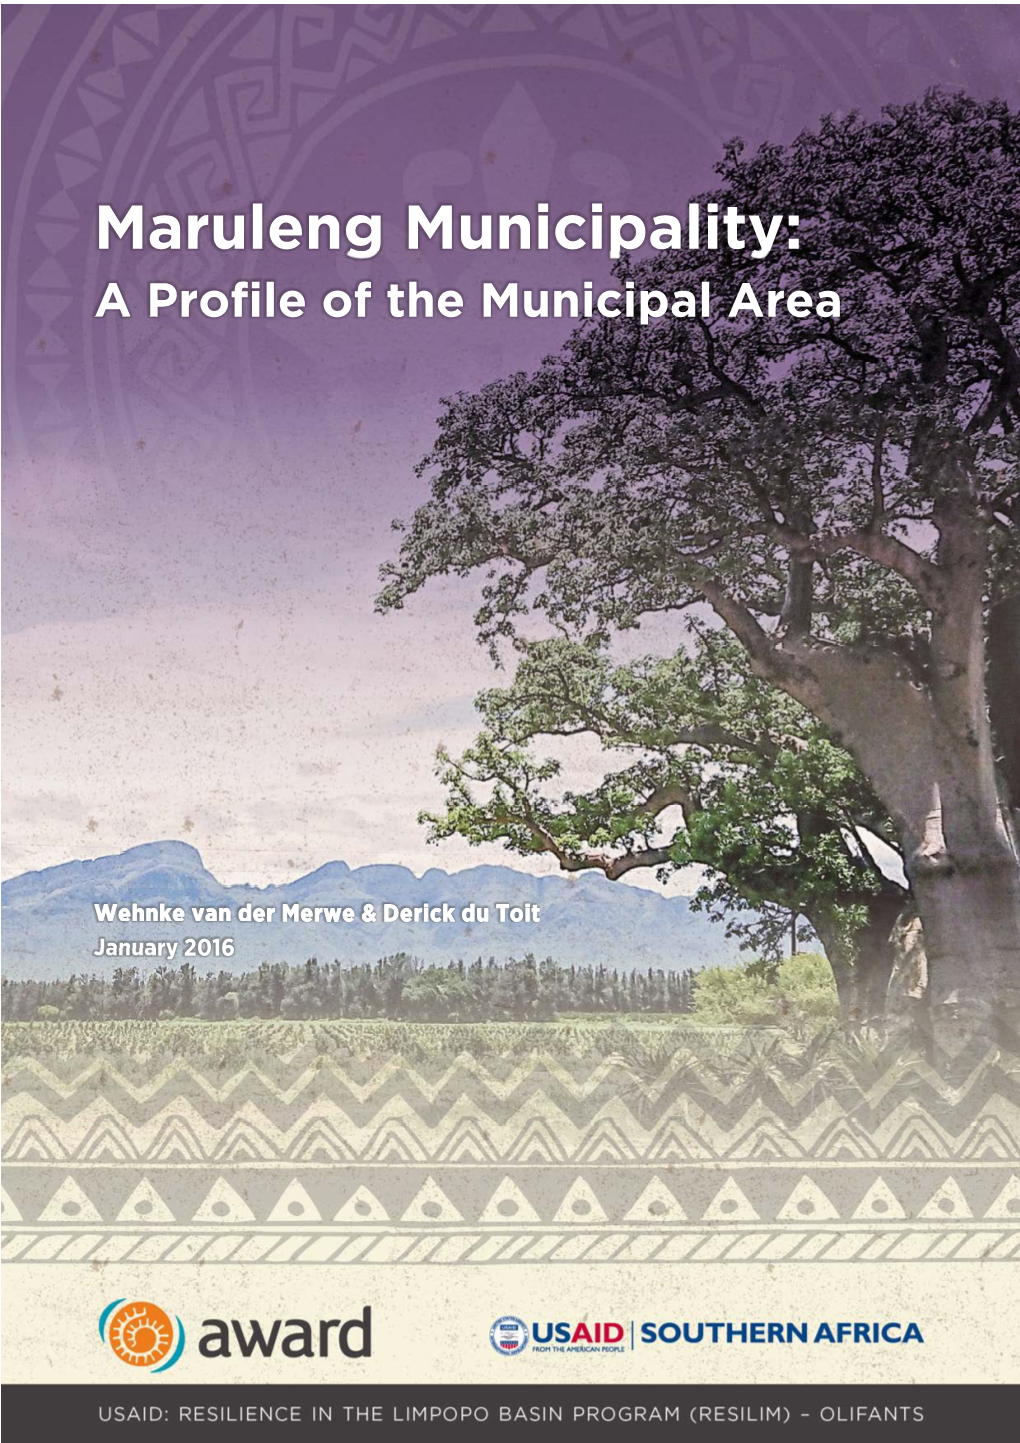 Maruleng Municipality: a Profile of the Municipal Area